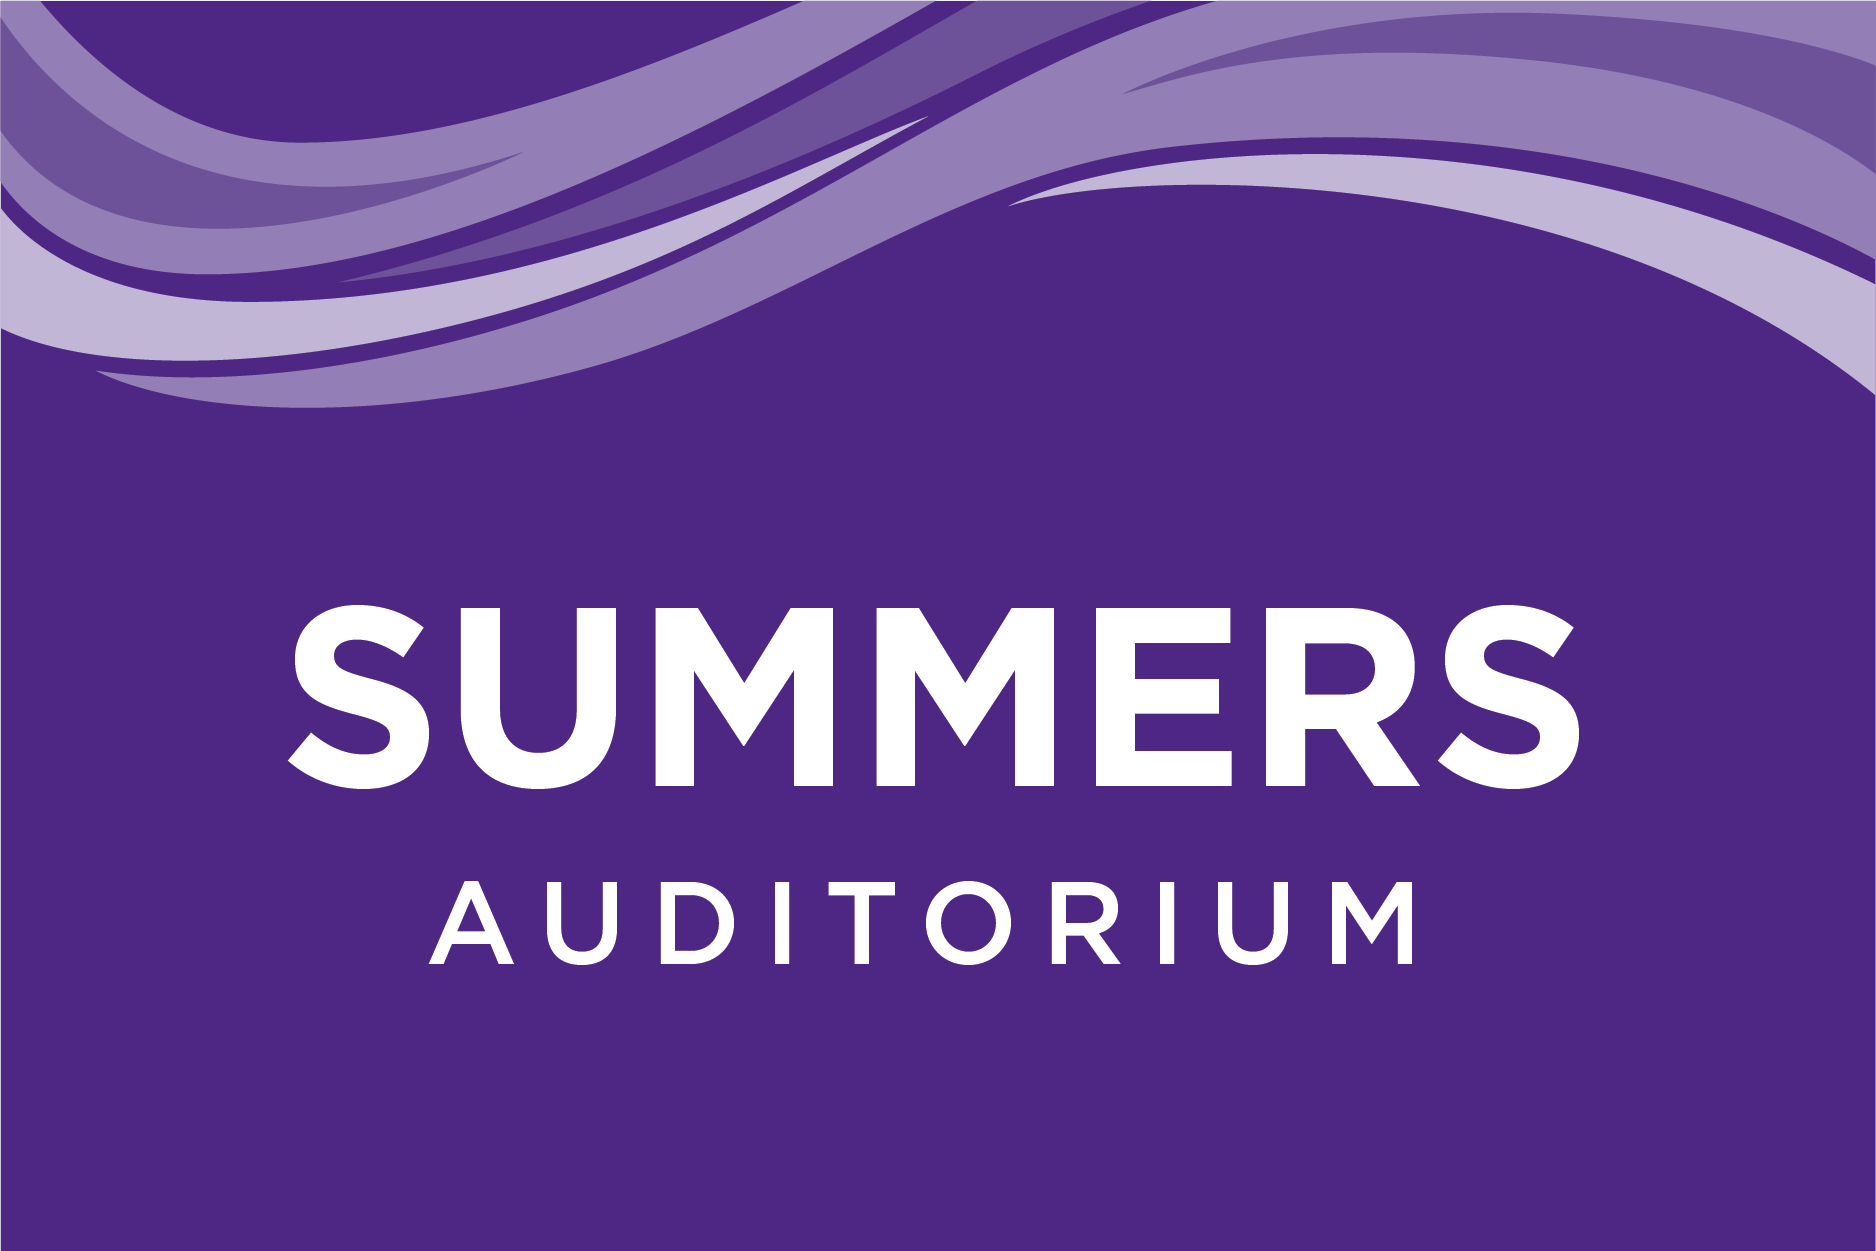 Summers Auditorium at UW-Whitewater